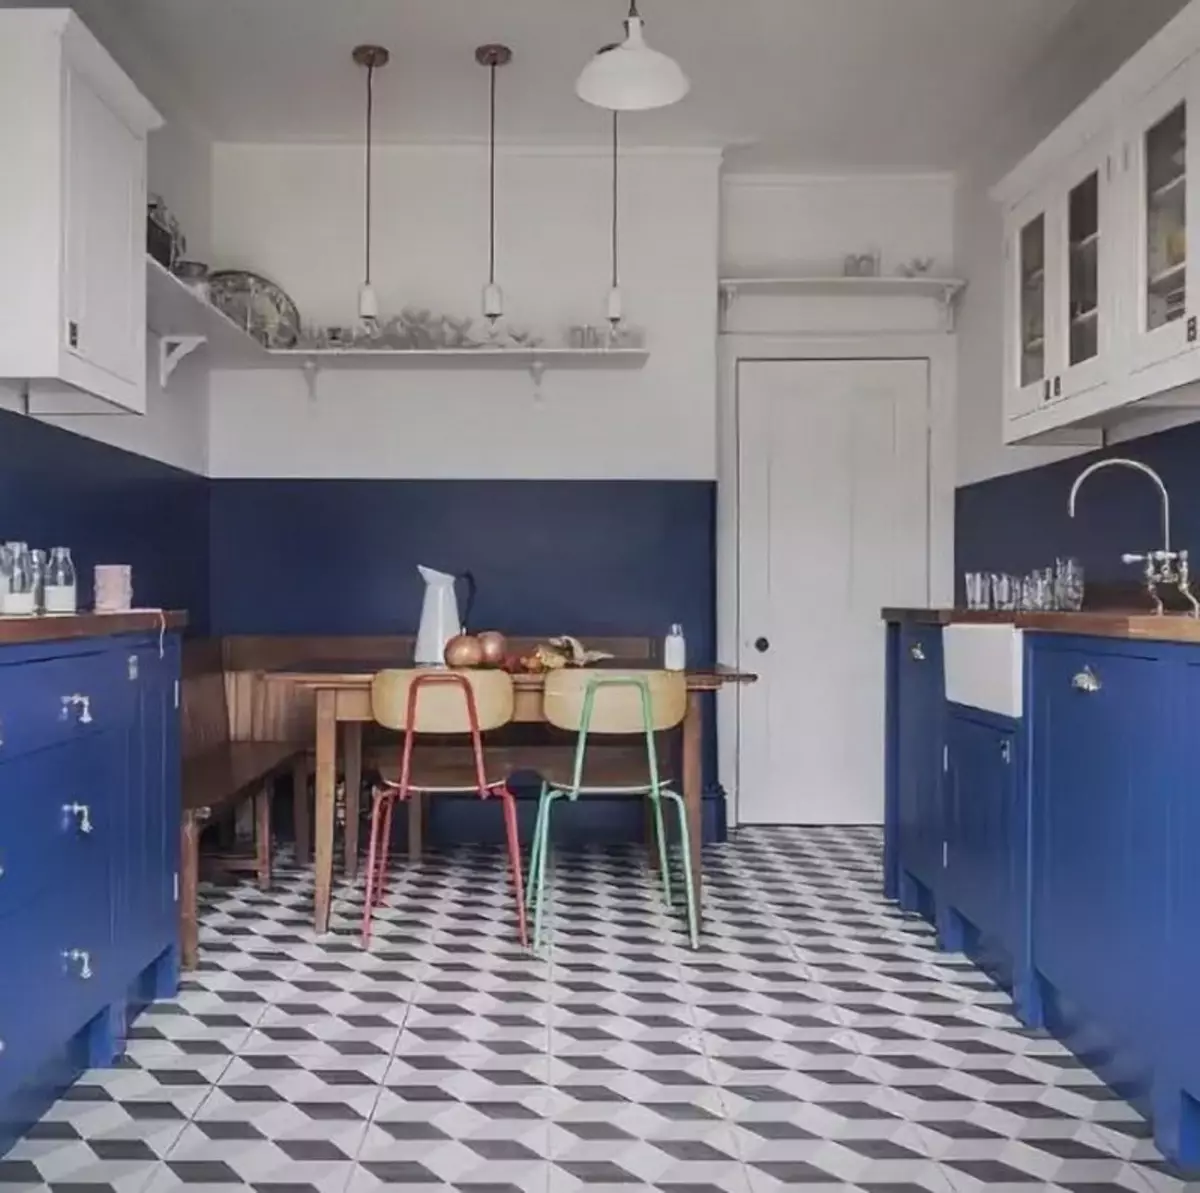 Cucina bianca-blu (64 foto): Caratteristiche dell'auricolare della cucina in colore bianco-blu per la cucina Interior design, accenti sulle pareti in colori simili 9393_16